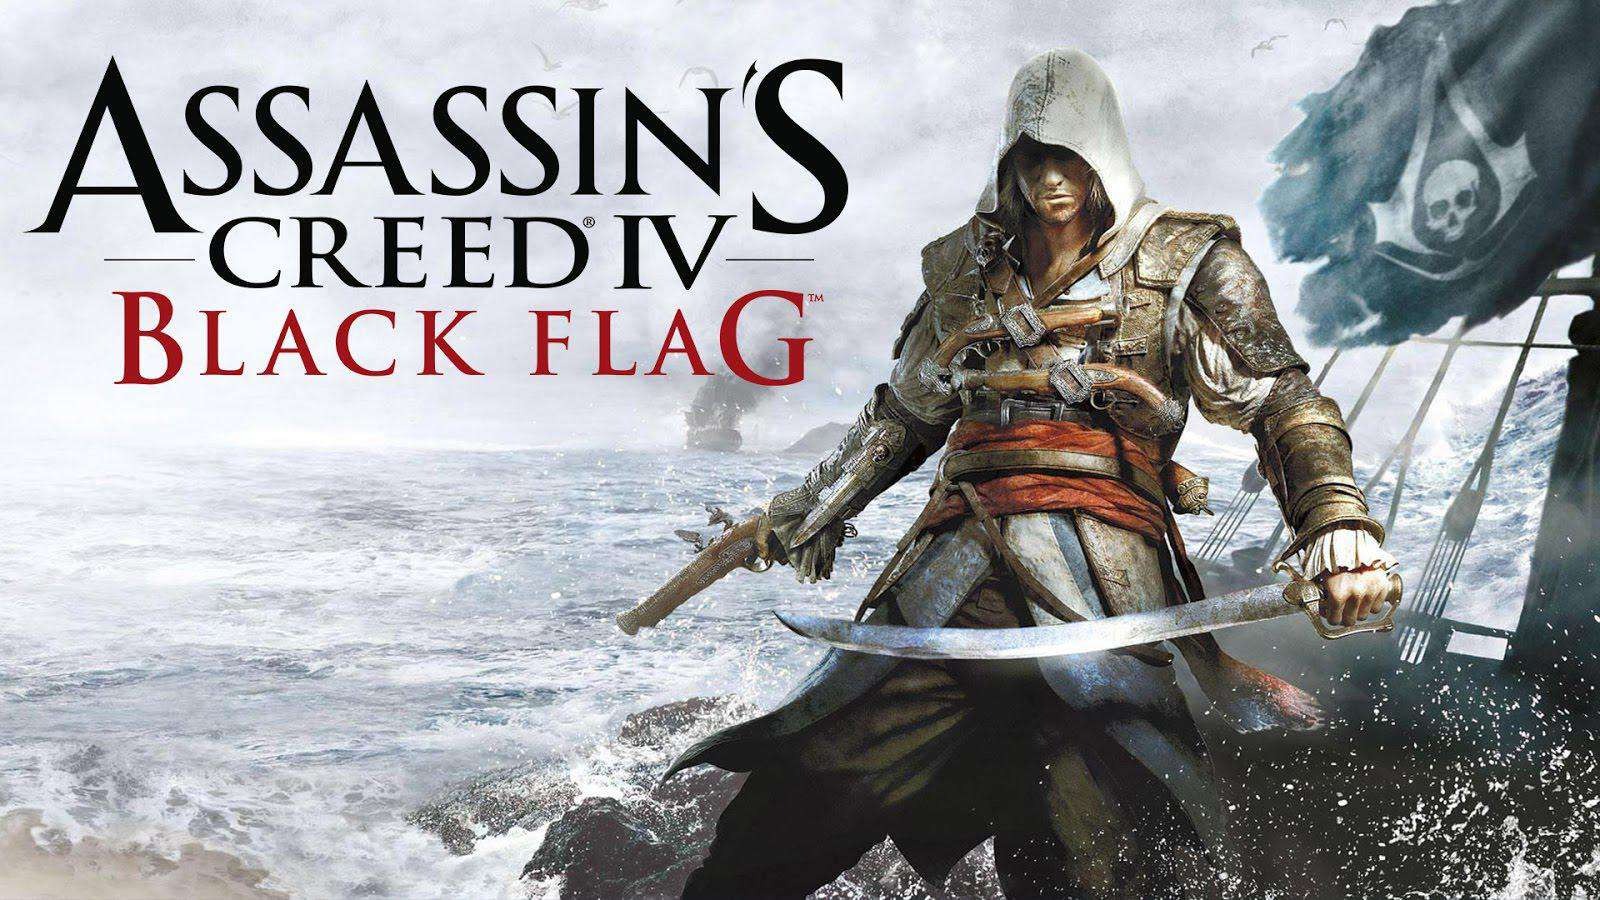 Assassin's Creed IV: Black Flag Bất Ngờ Bị Xóa Khỏi Steam Khiến Game Thủ Háo Hức Chờ Tin Vui, Nhưng Cái Kết Khiến Ai Cũng "Bật Ngửa"